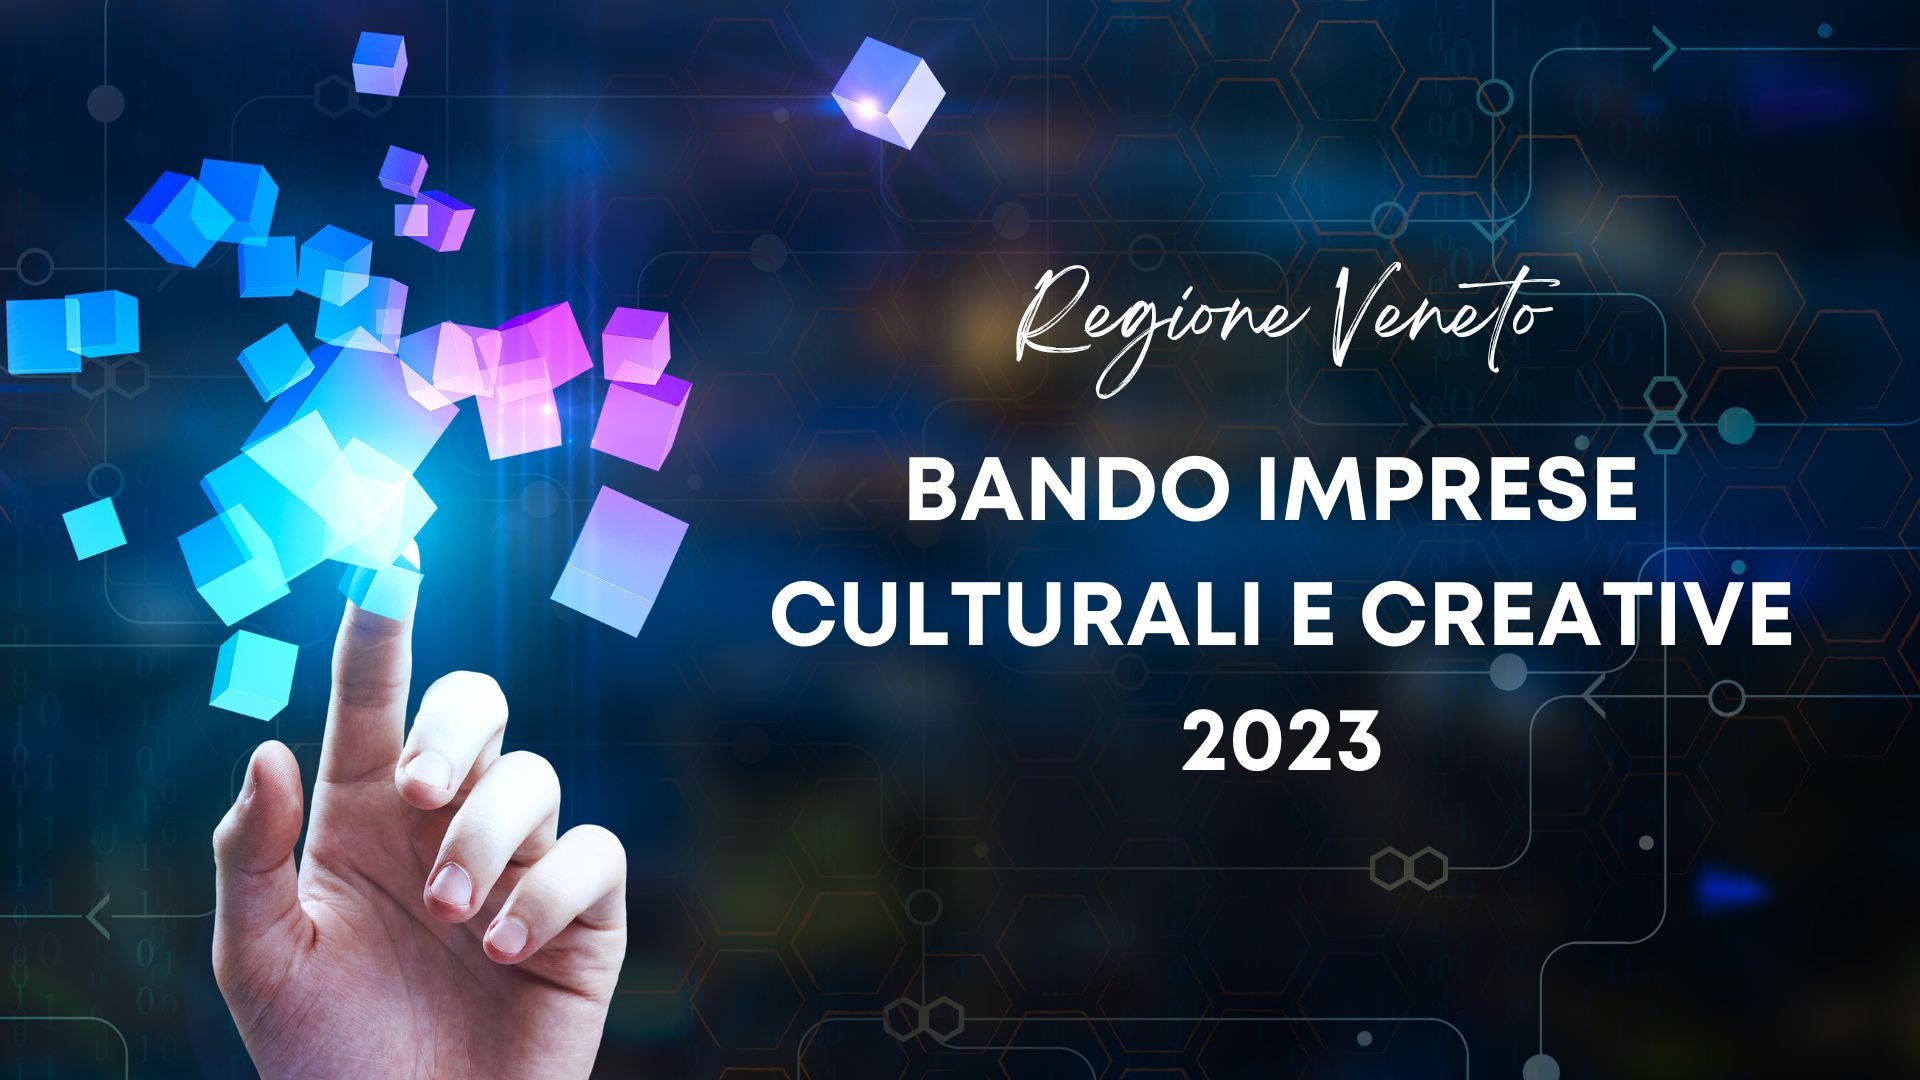 La Regione Veneto sostiene le imprese culturali, creative e dell’audiovisivo!